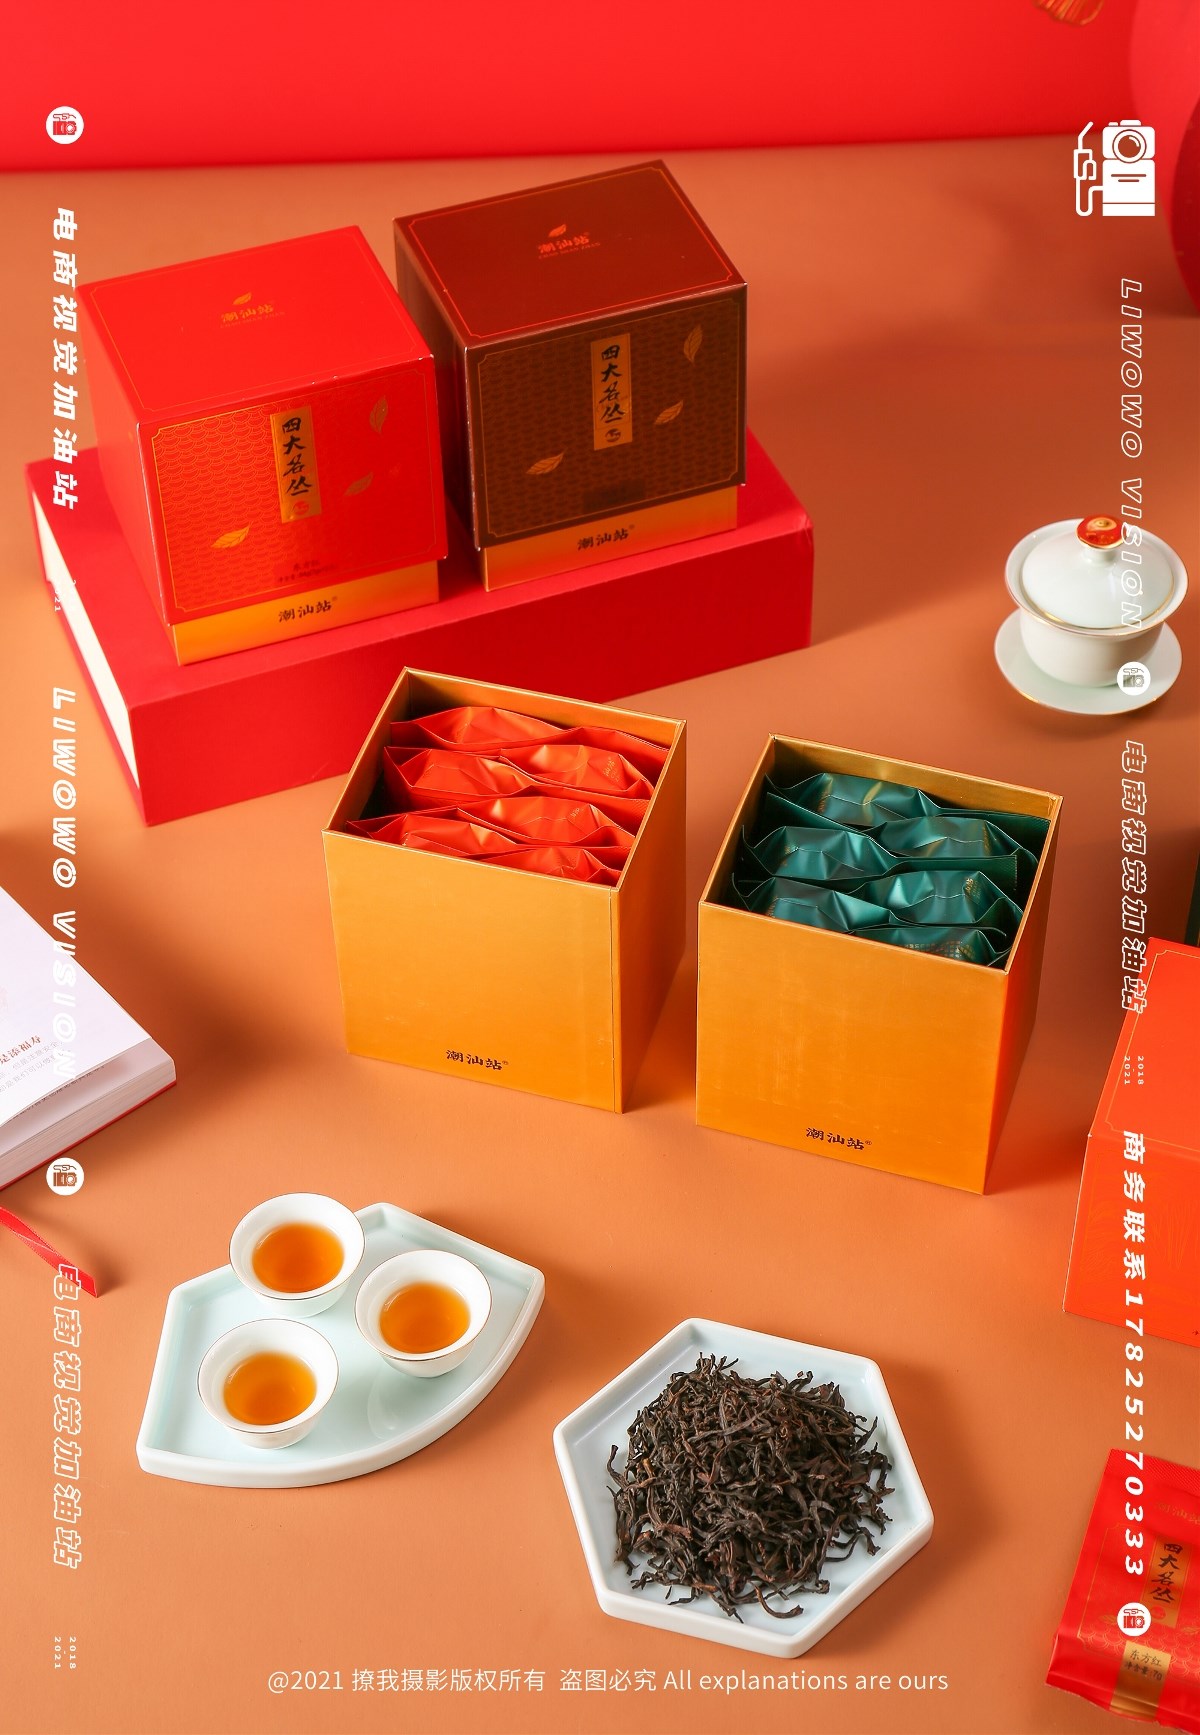 食品拍摄 | 潮汕站 x 春节礼盒系列 x LIAOWO VISION